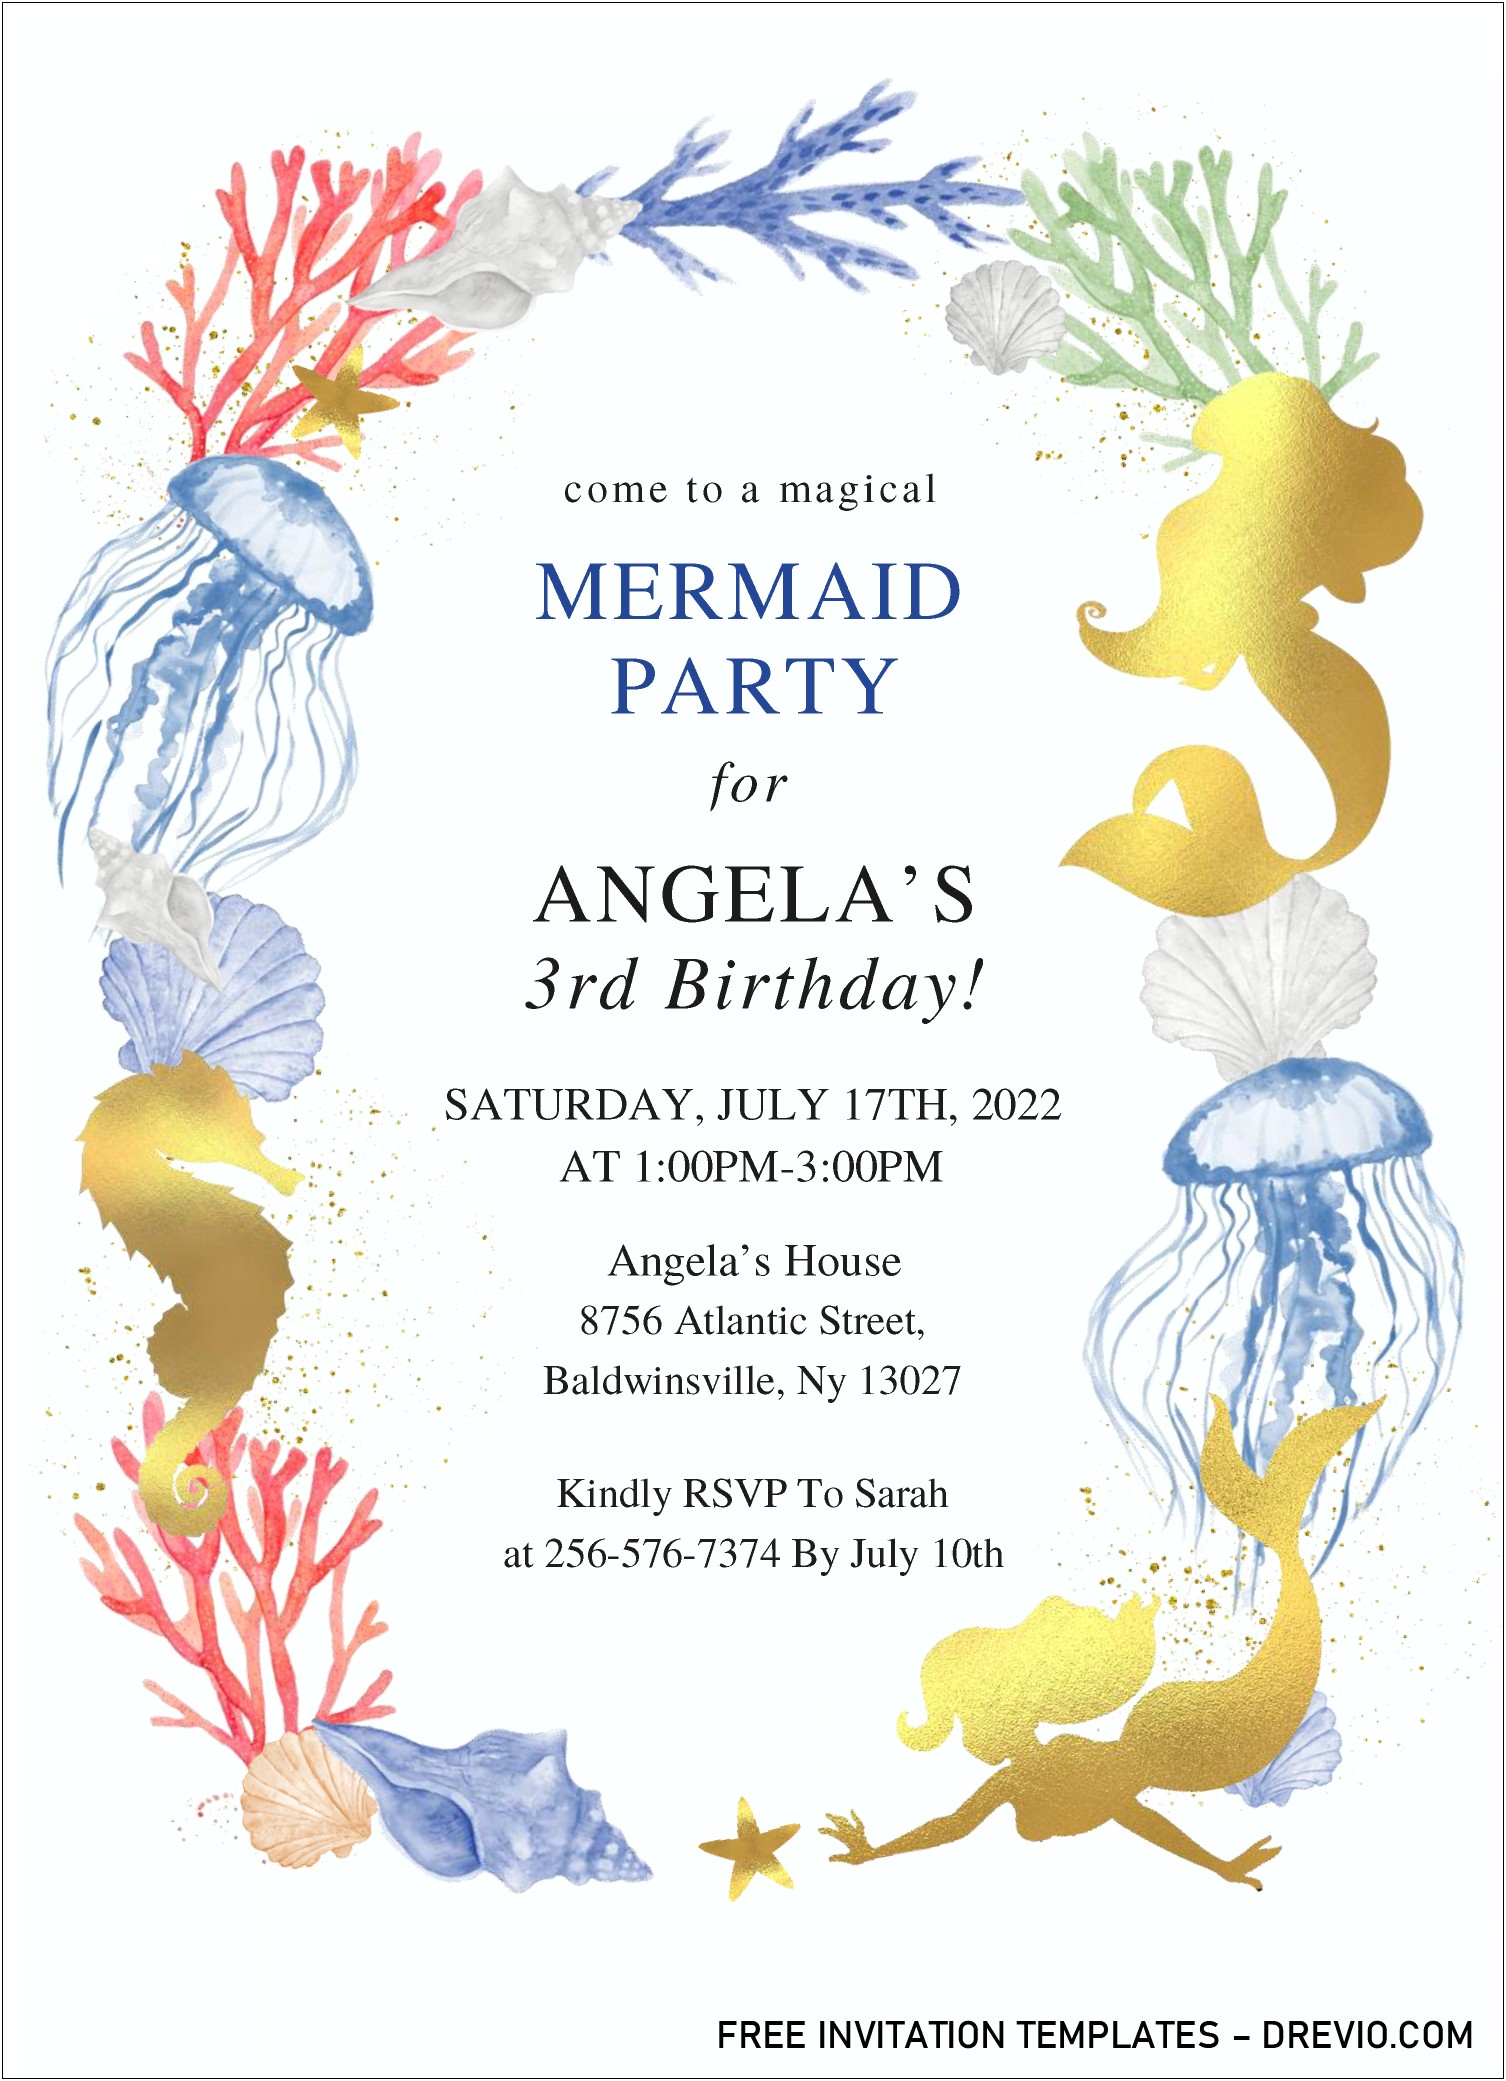 Free Printable Invitation Templates Mermaid Invitation